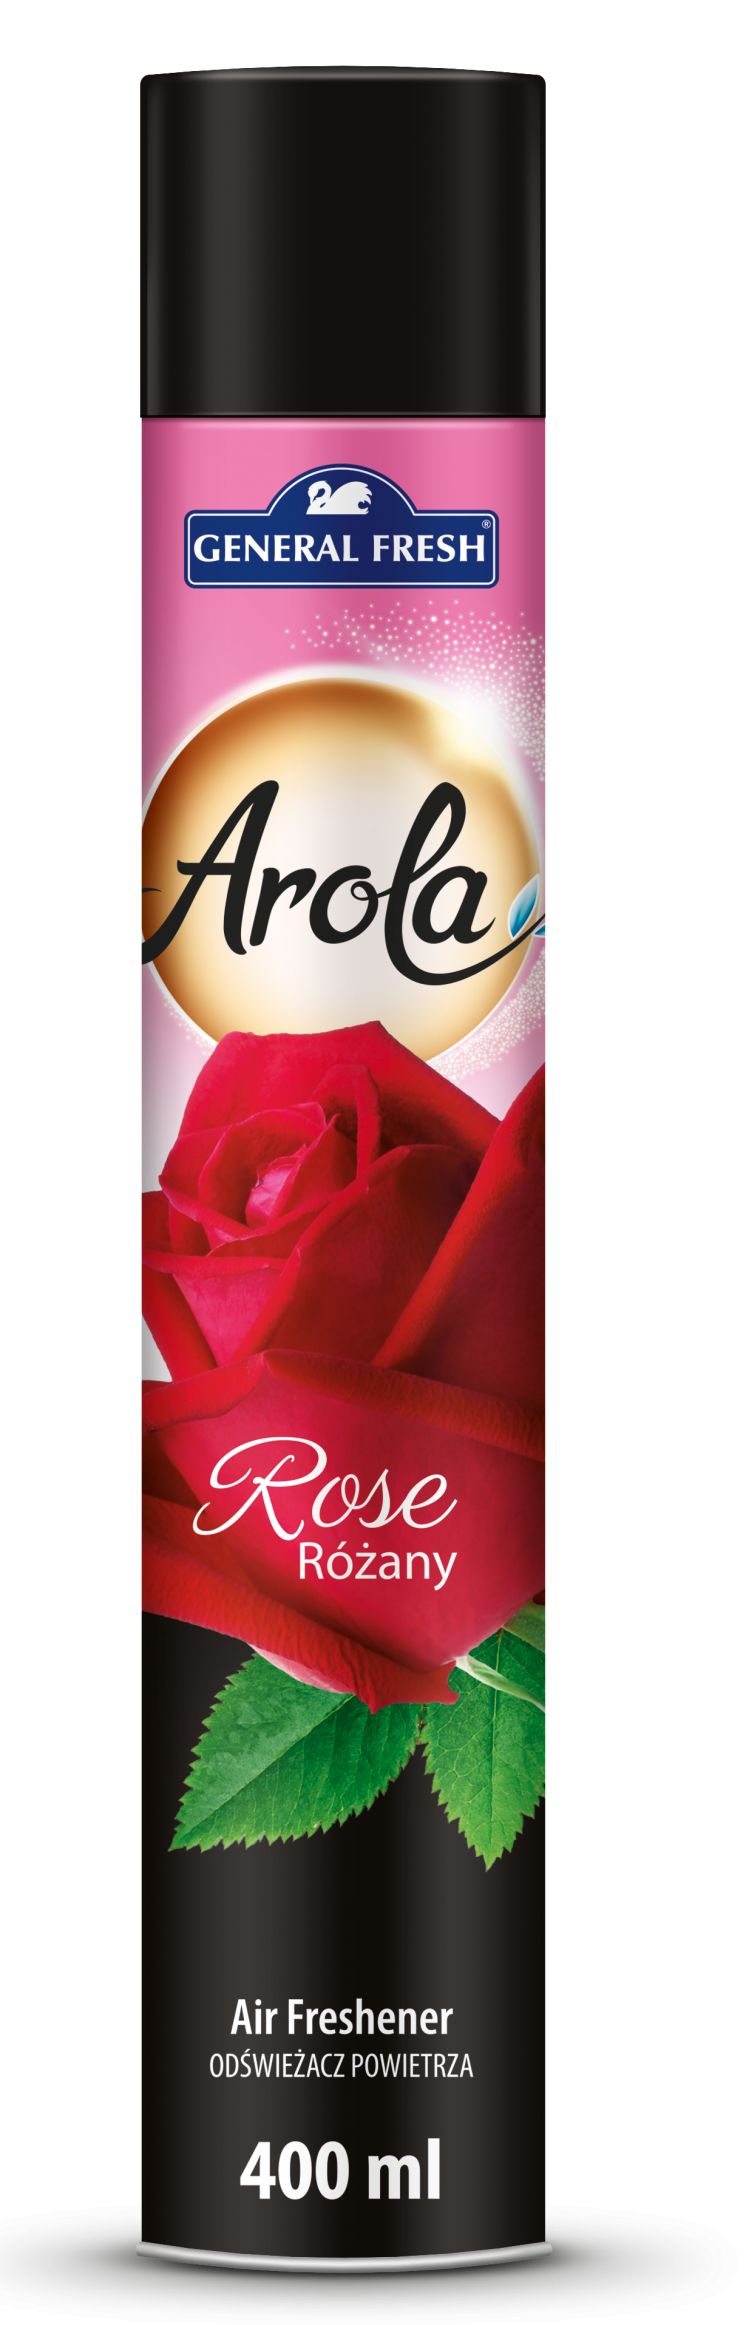 Odświeżacz powietrza AROLA Spray 400ml różany